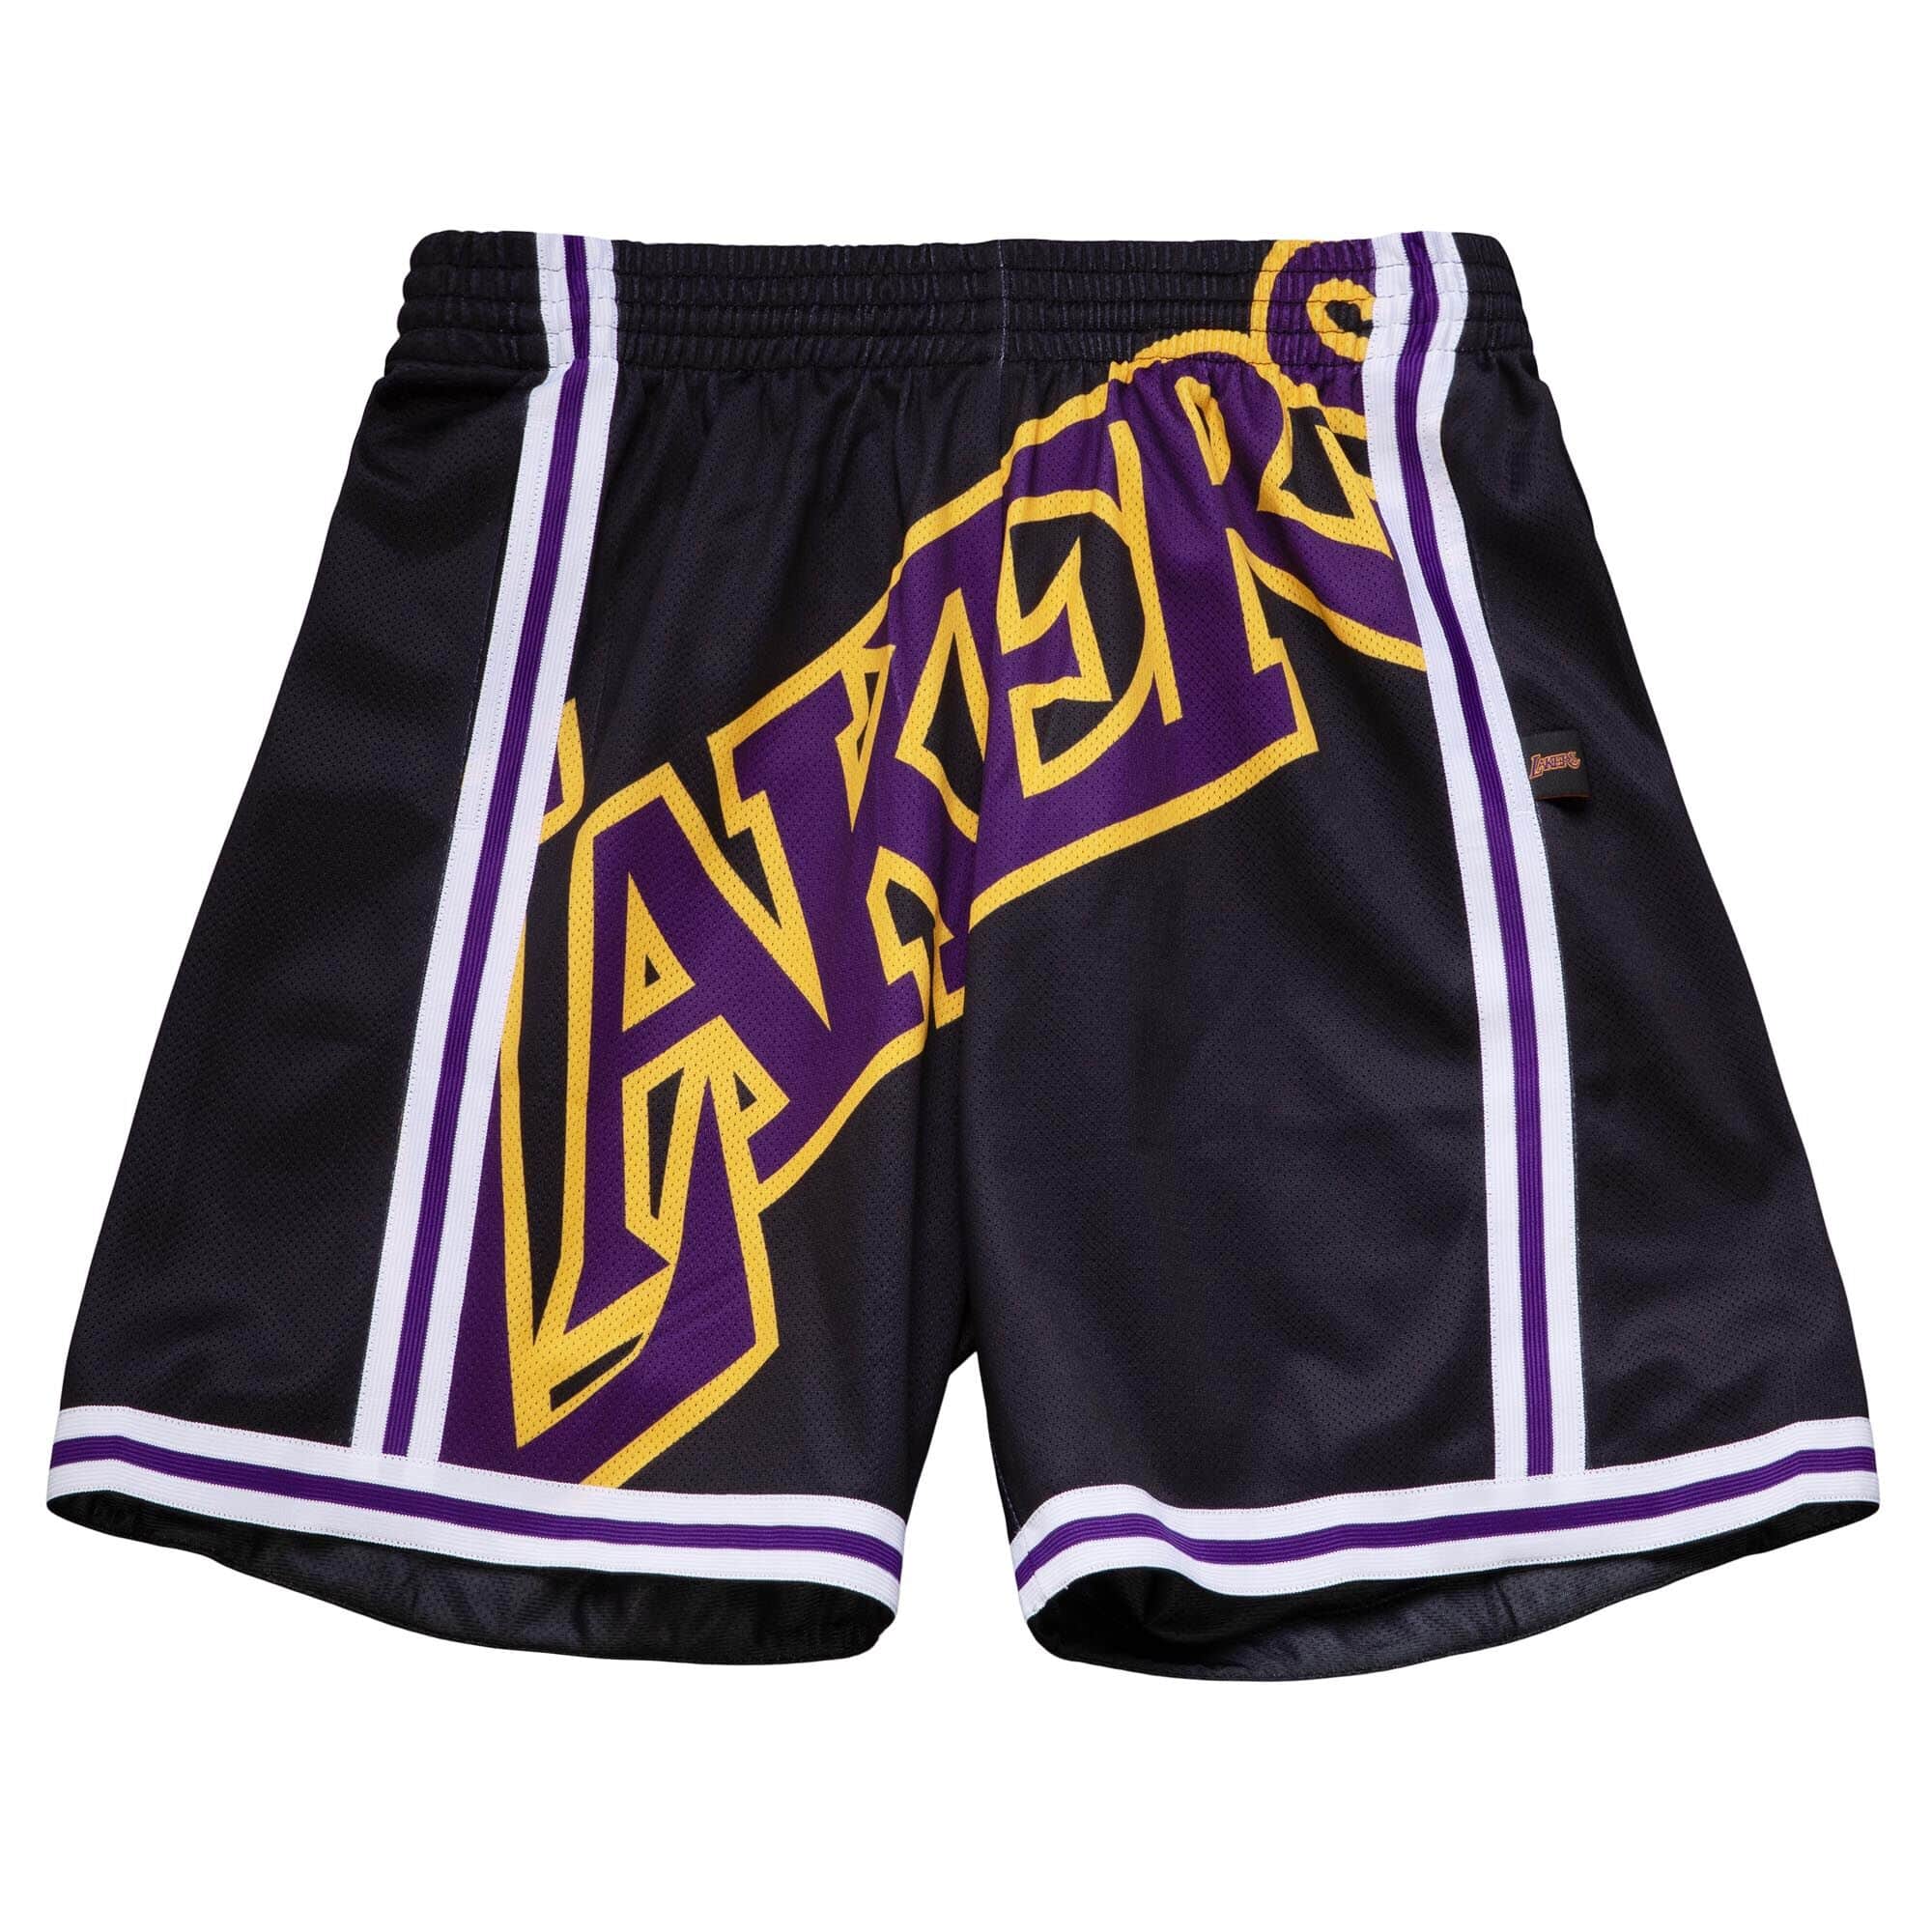 4xl lakers shorts